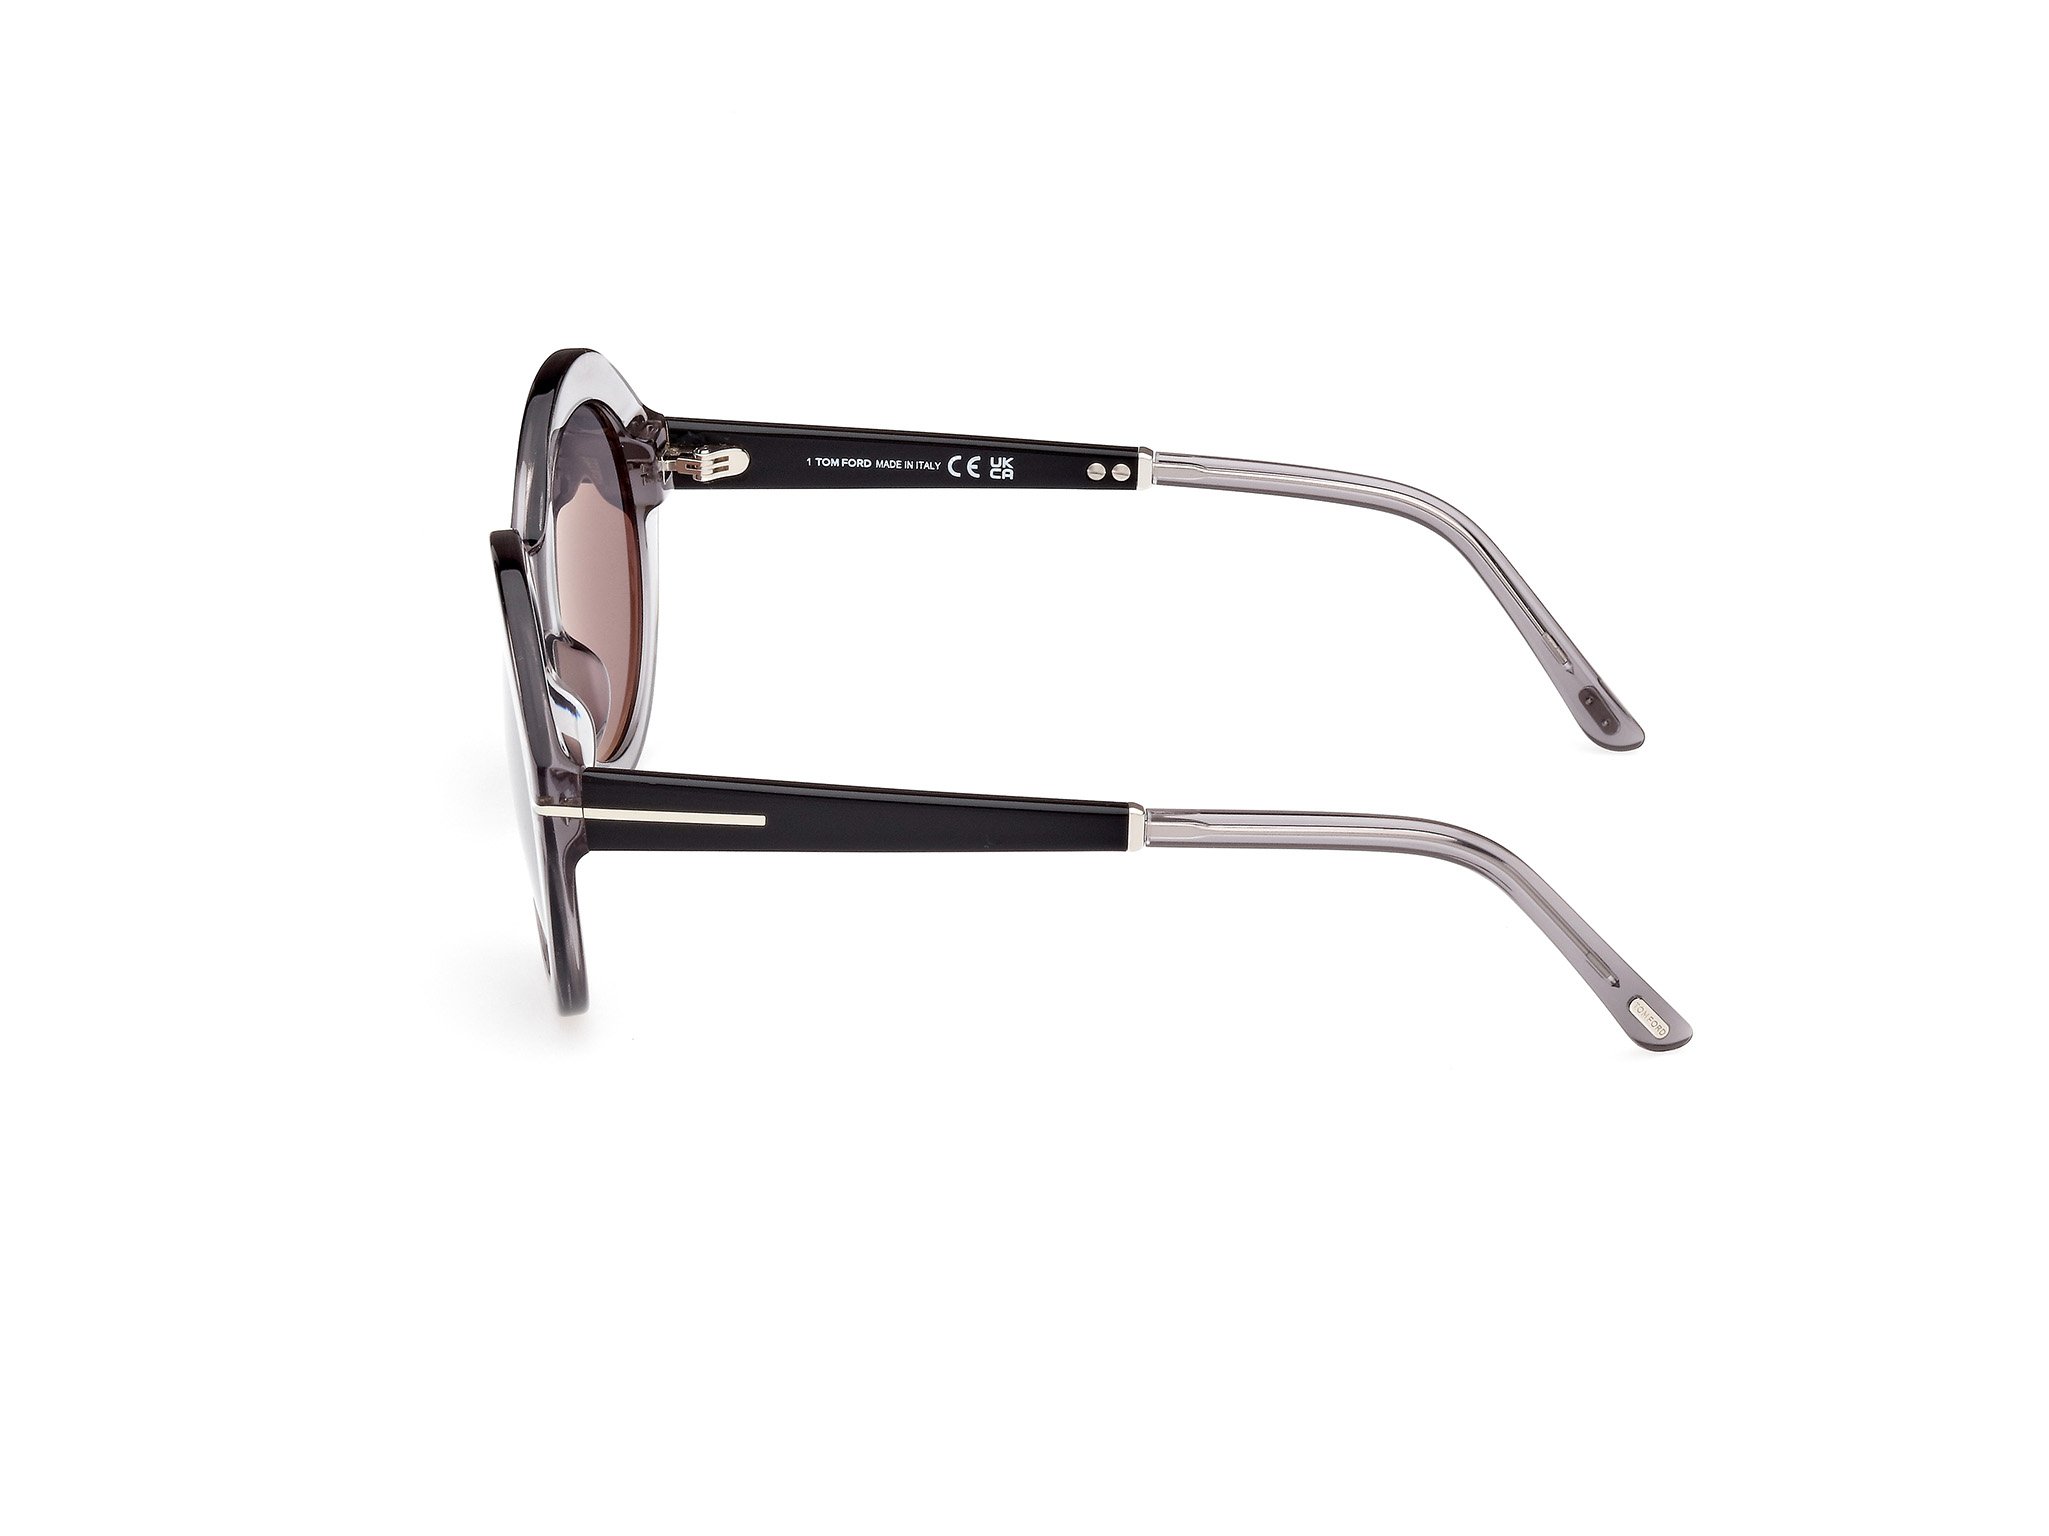  Tom Ford Sonnenbrille Seraphina in grau/schwarz FT1088 20C